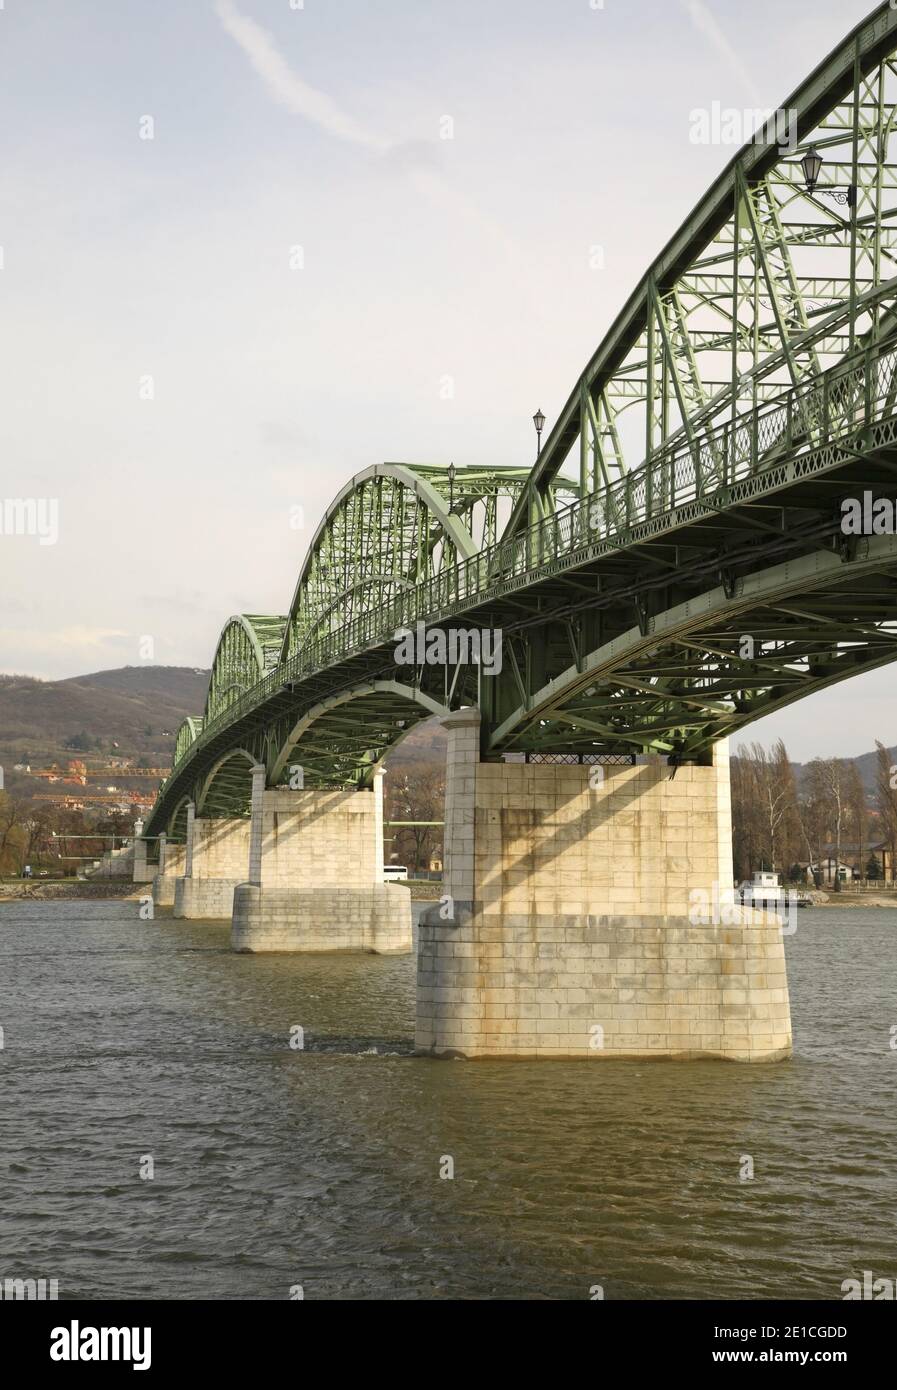 Maria Valeria Bridge over Danube river in Sturovo. Slovakia Stock Photo